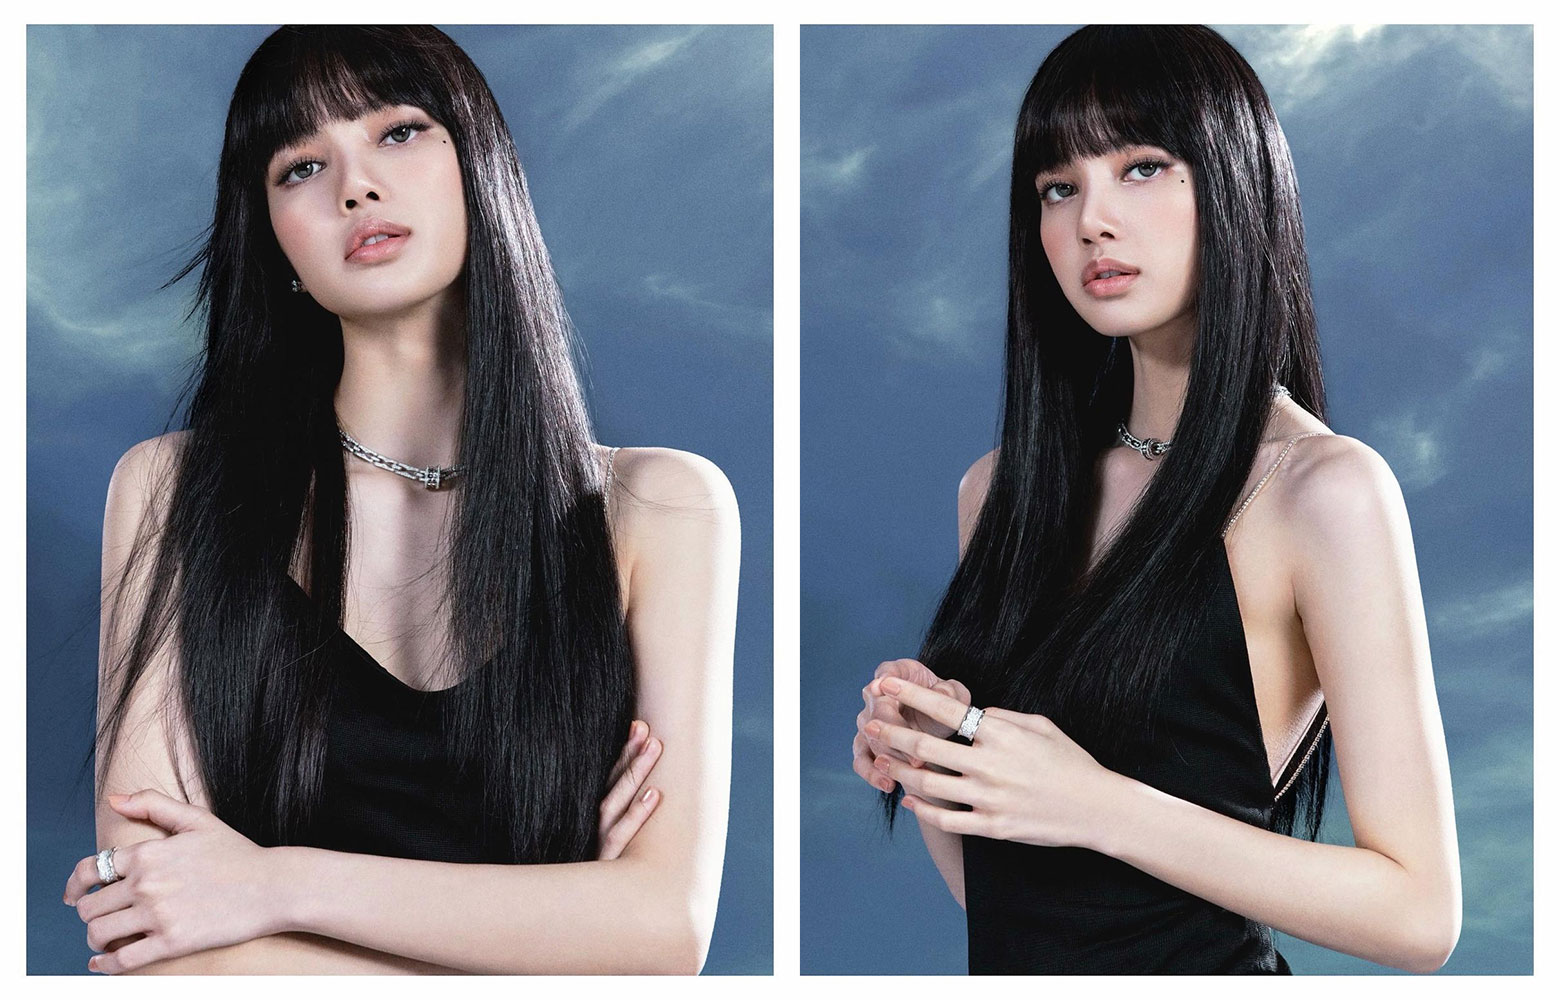 Lisa BLACKPINK chuẩn bị debut solo, chia sẻ về gu thời trang cá nhân 1